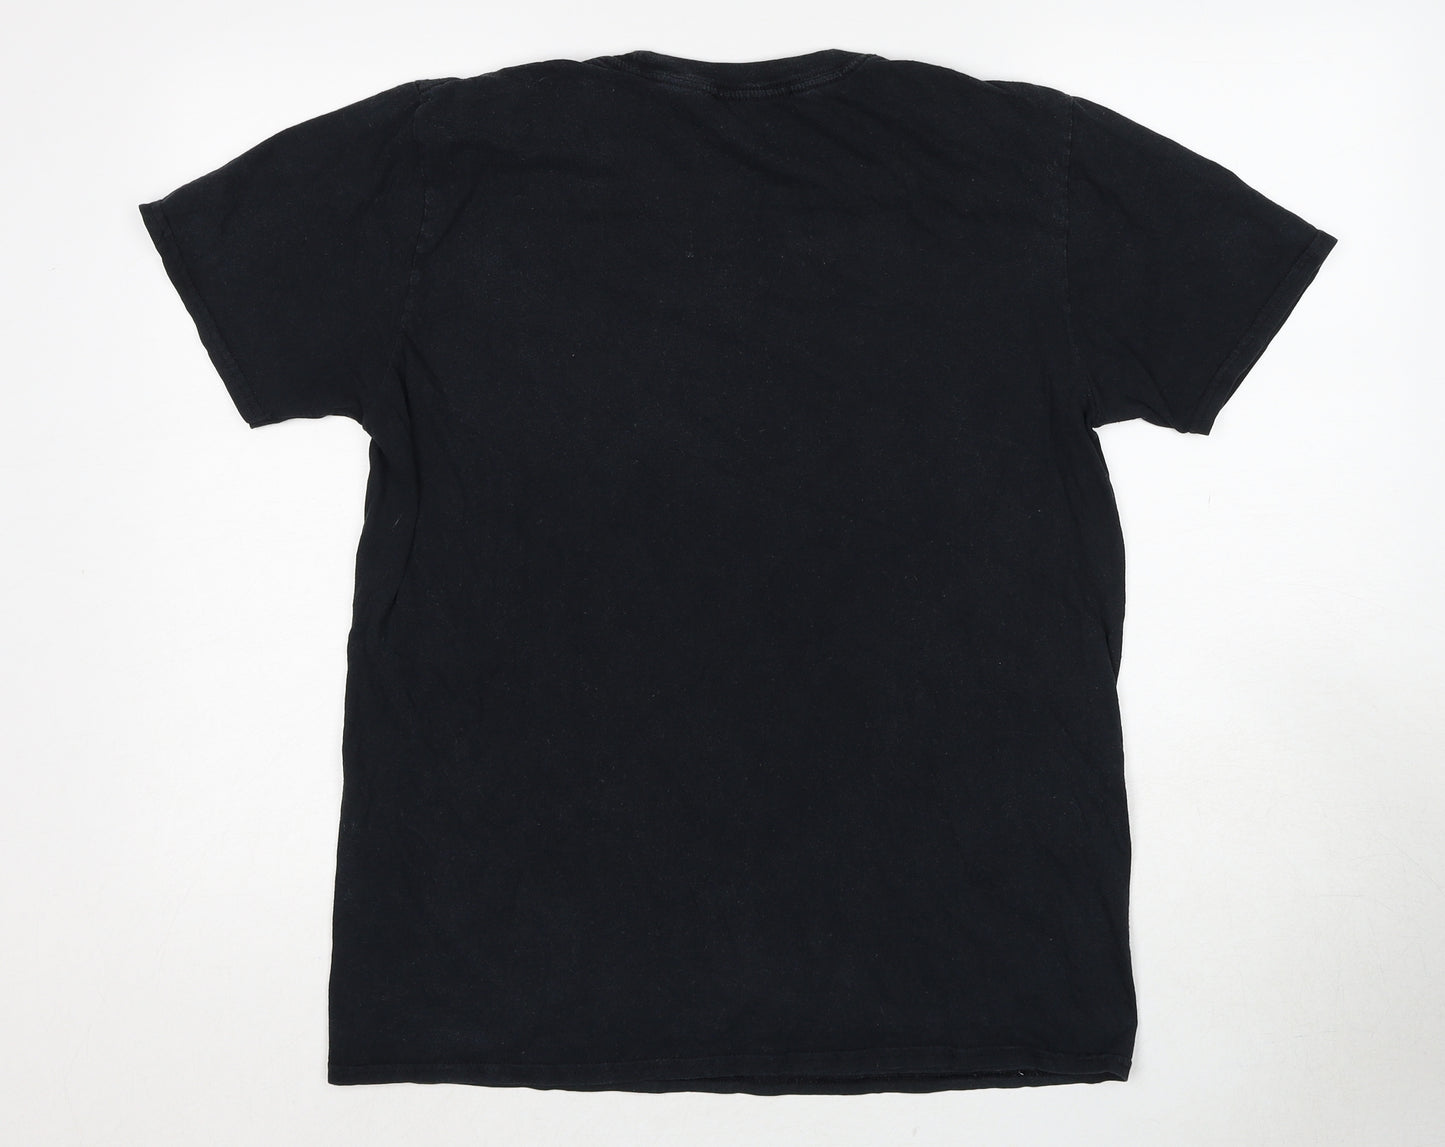 Adolecent Womens Black Cotton Basic T-Shirt Size L Crew Neck - Revenge